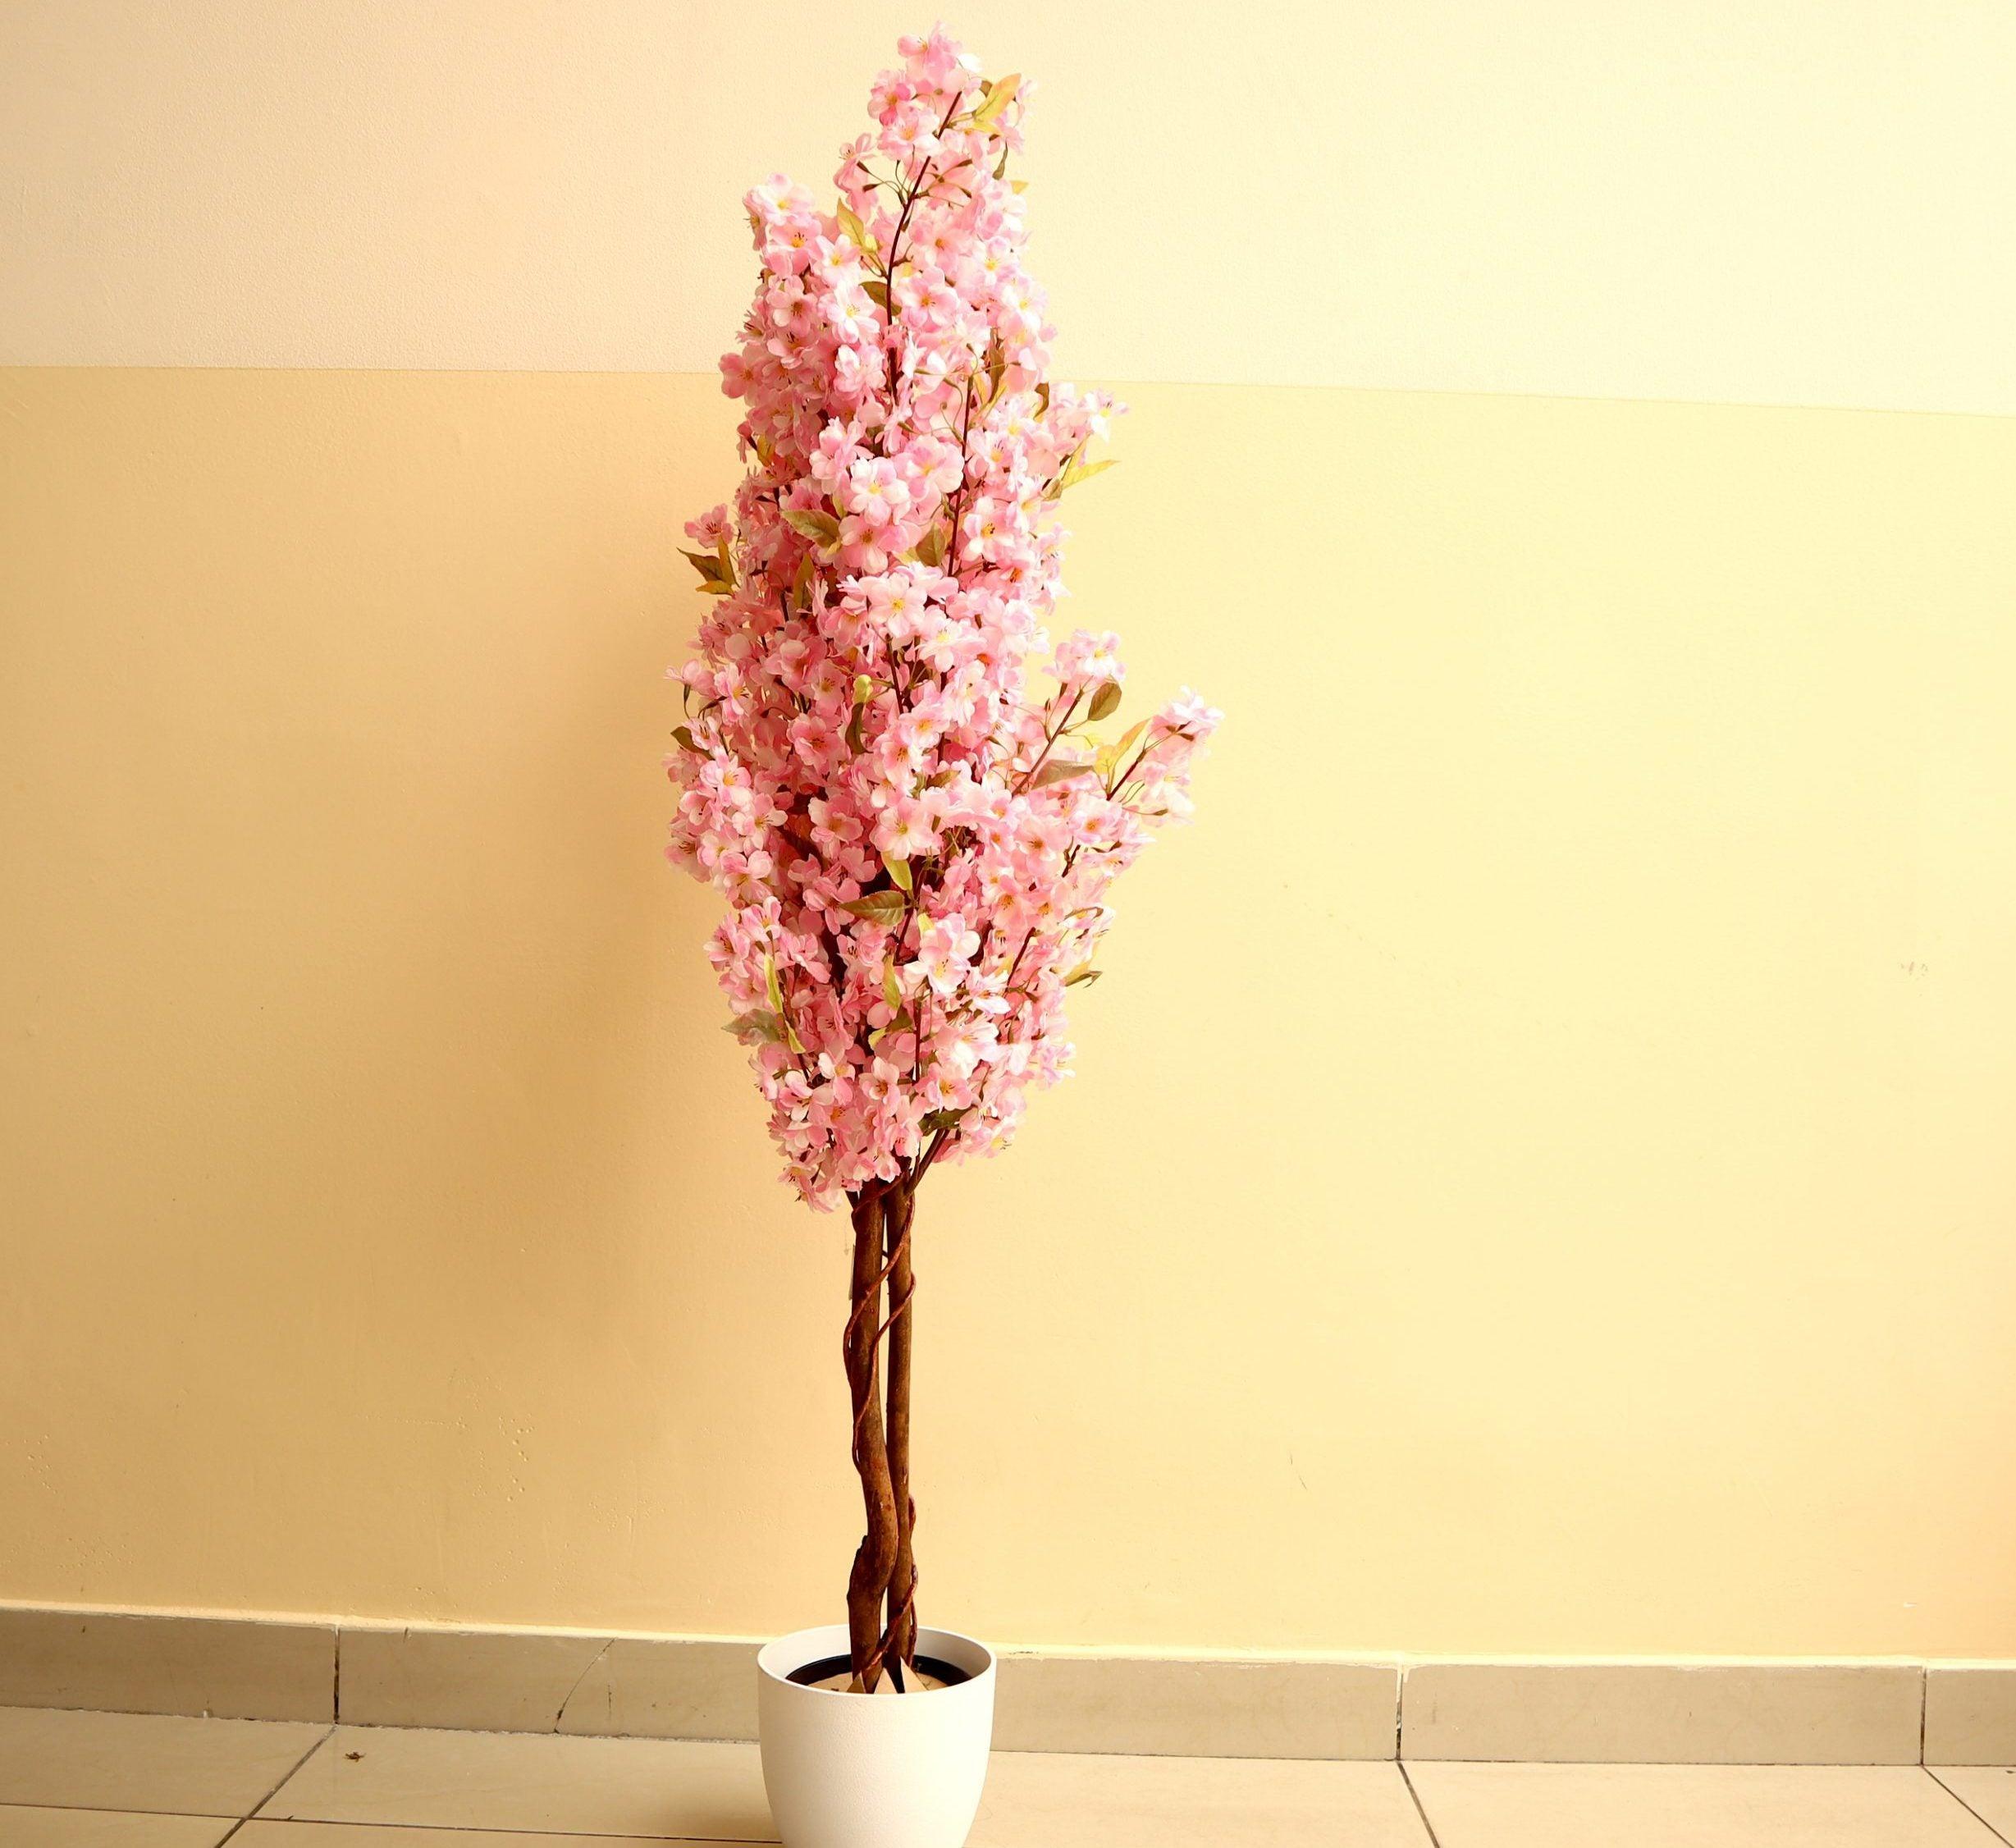 Artificial Cherry Blossom 150cm